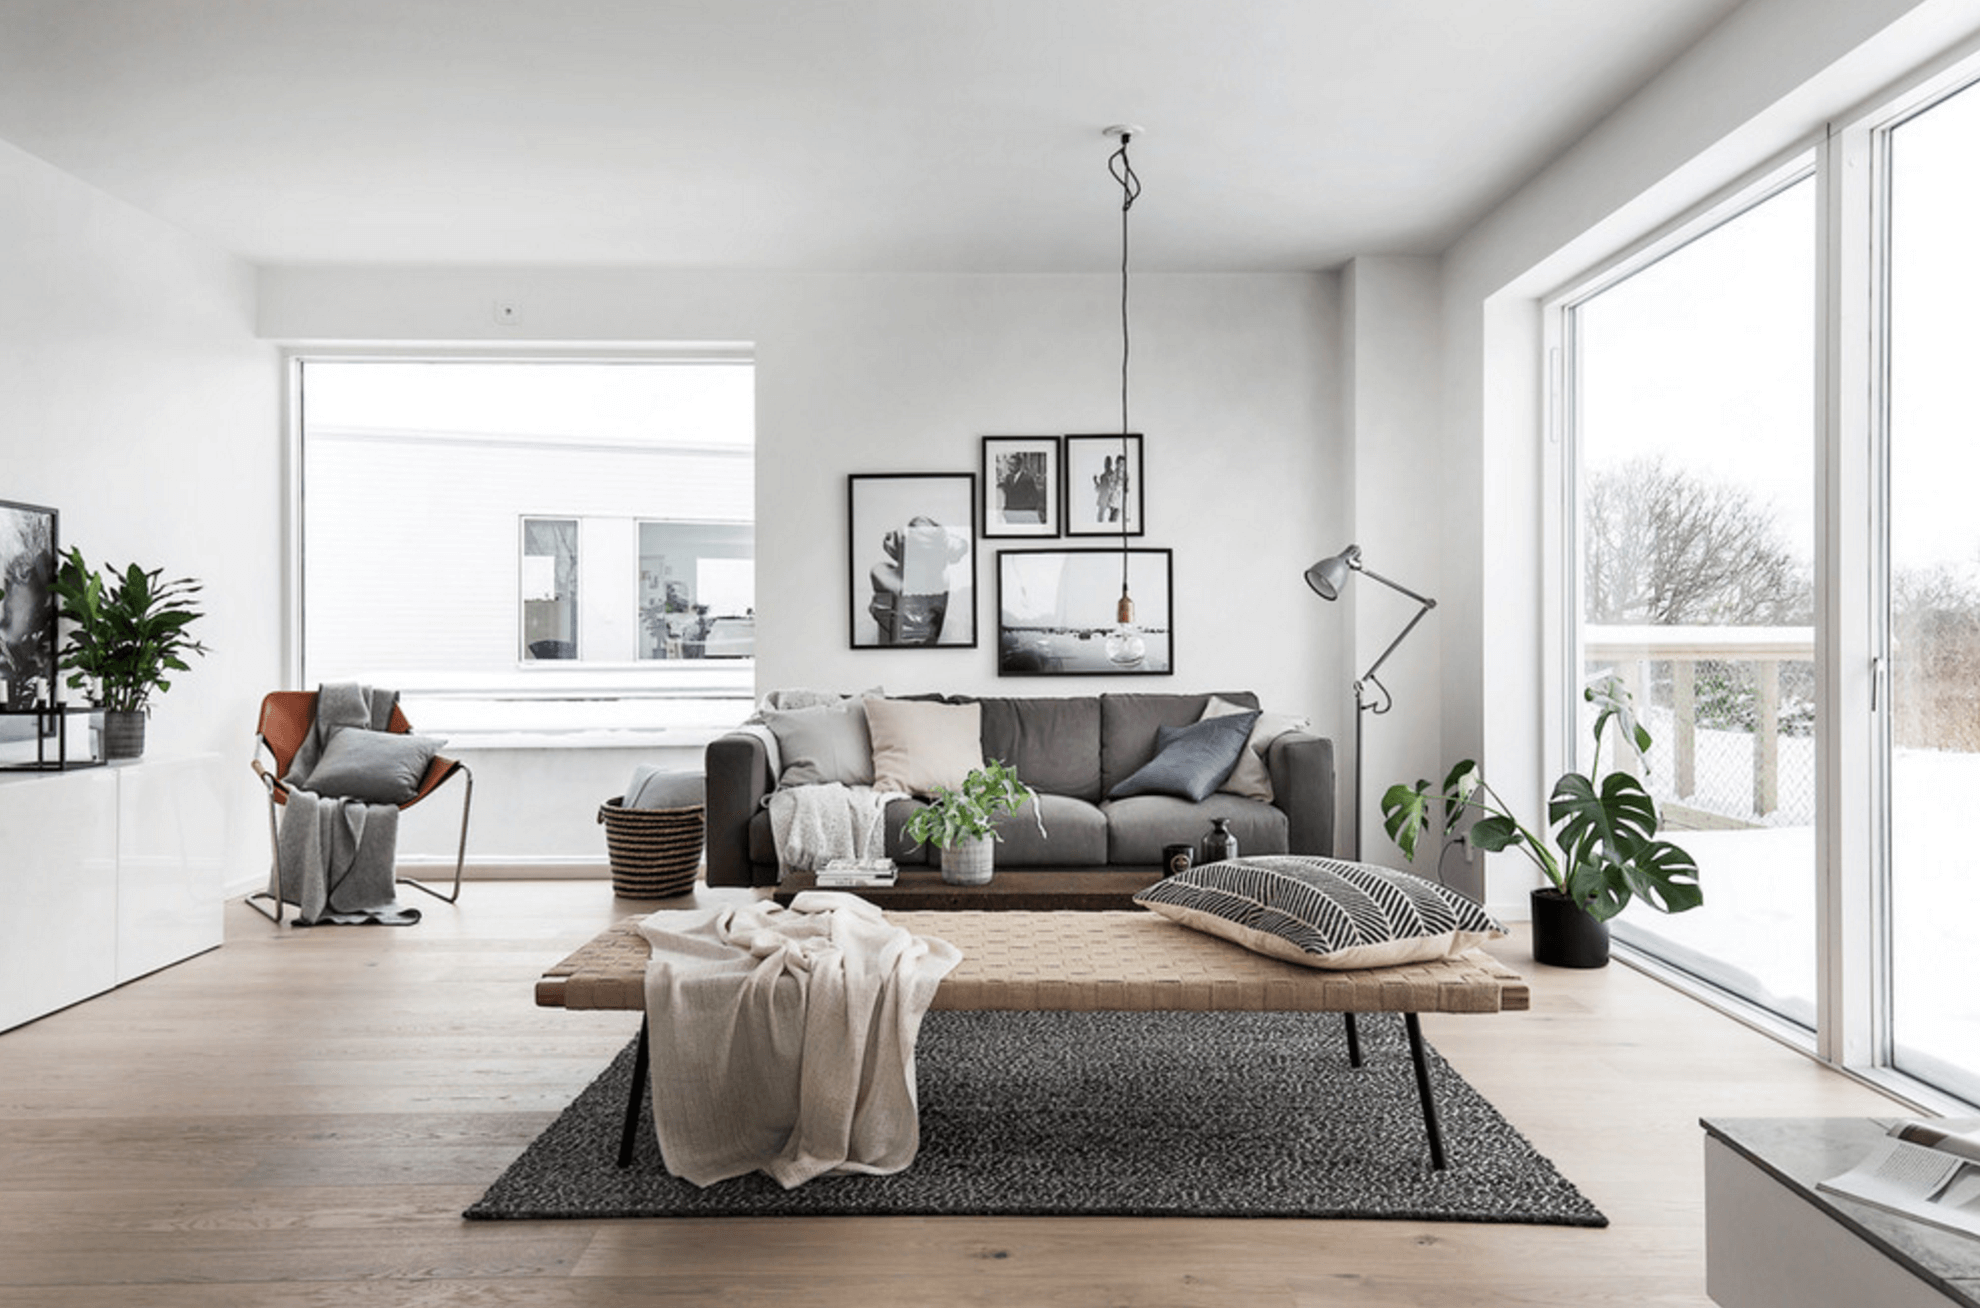 Tìm hiểu phong cách Scandinavian style trong nội thất